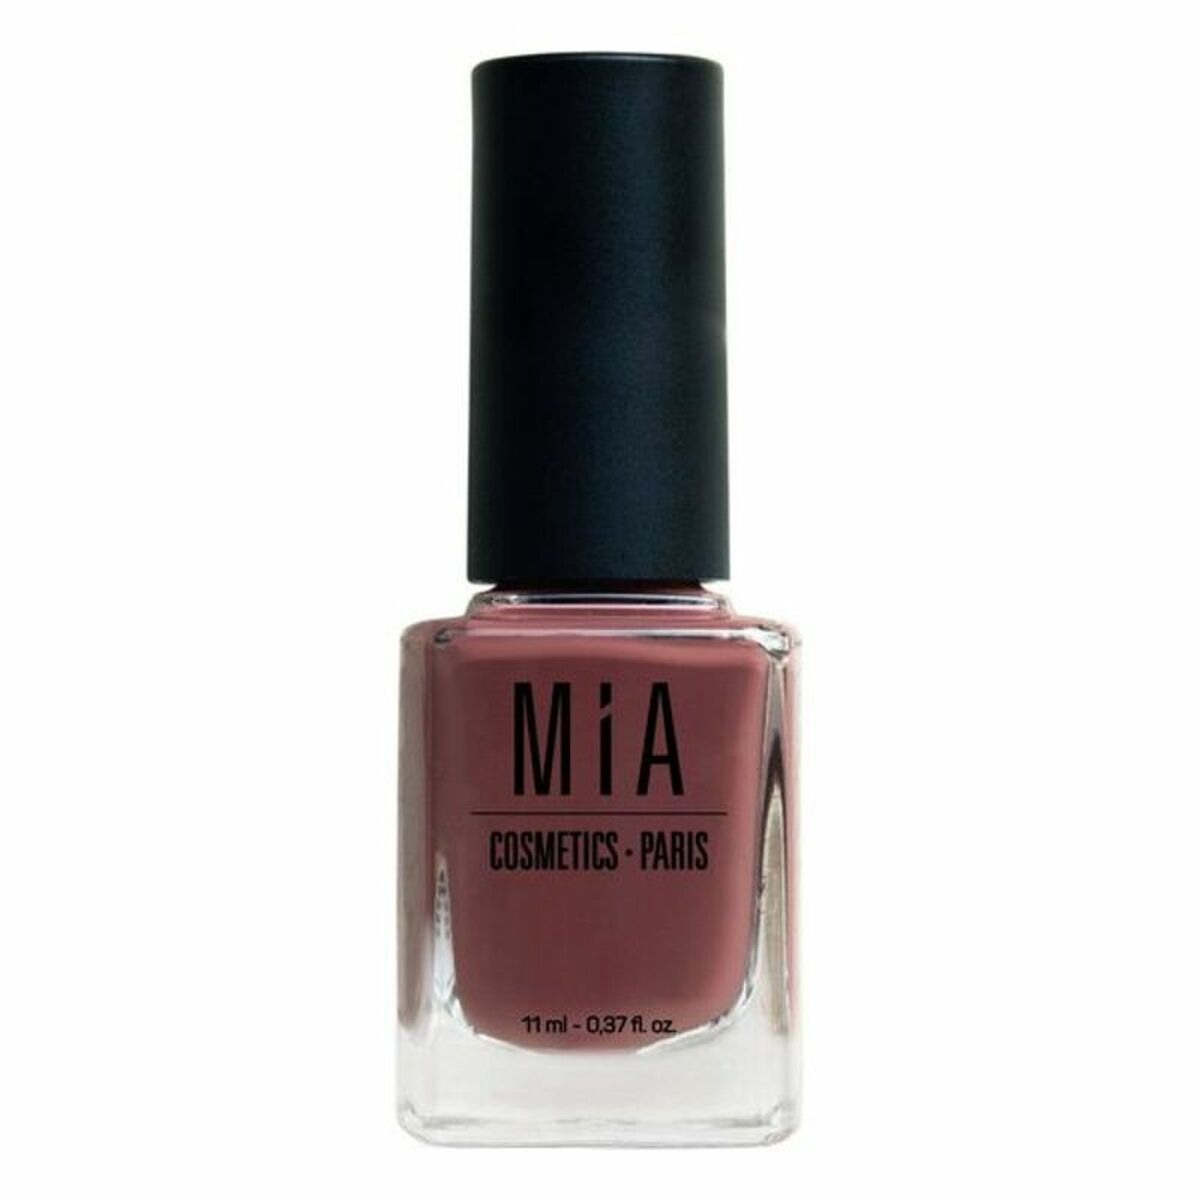 Nail polish Mia Cosmetics Paris Mahogany (11 ml) - Calm Beauty IE